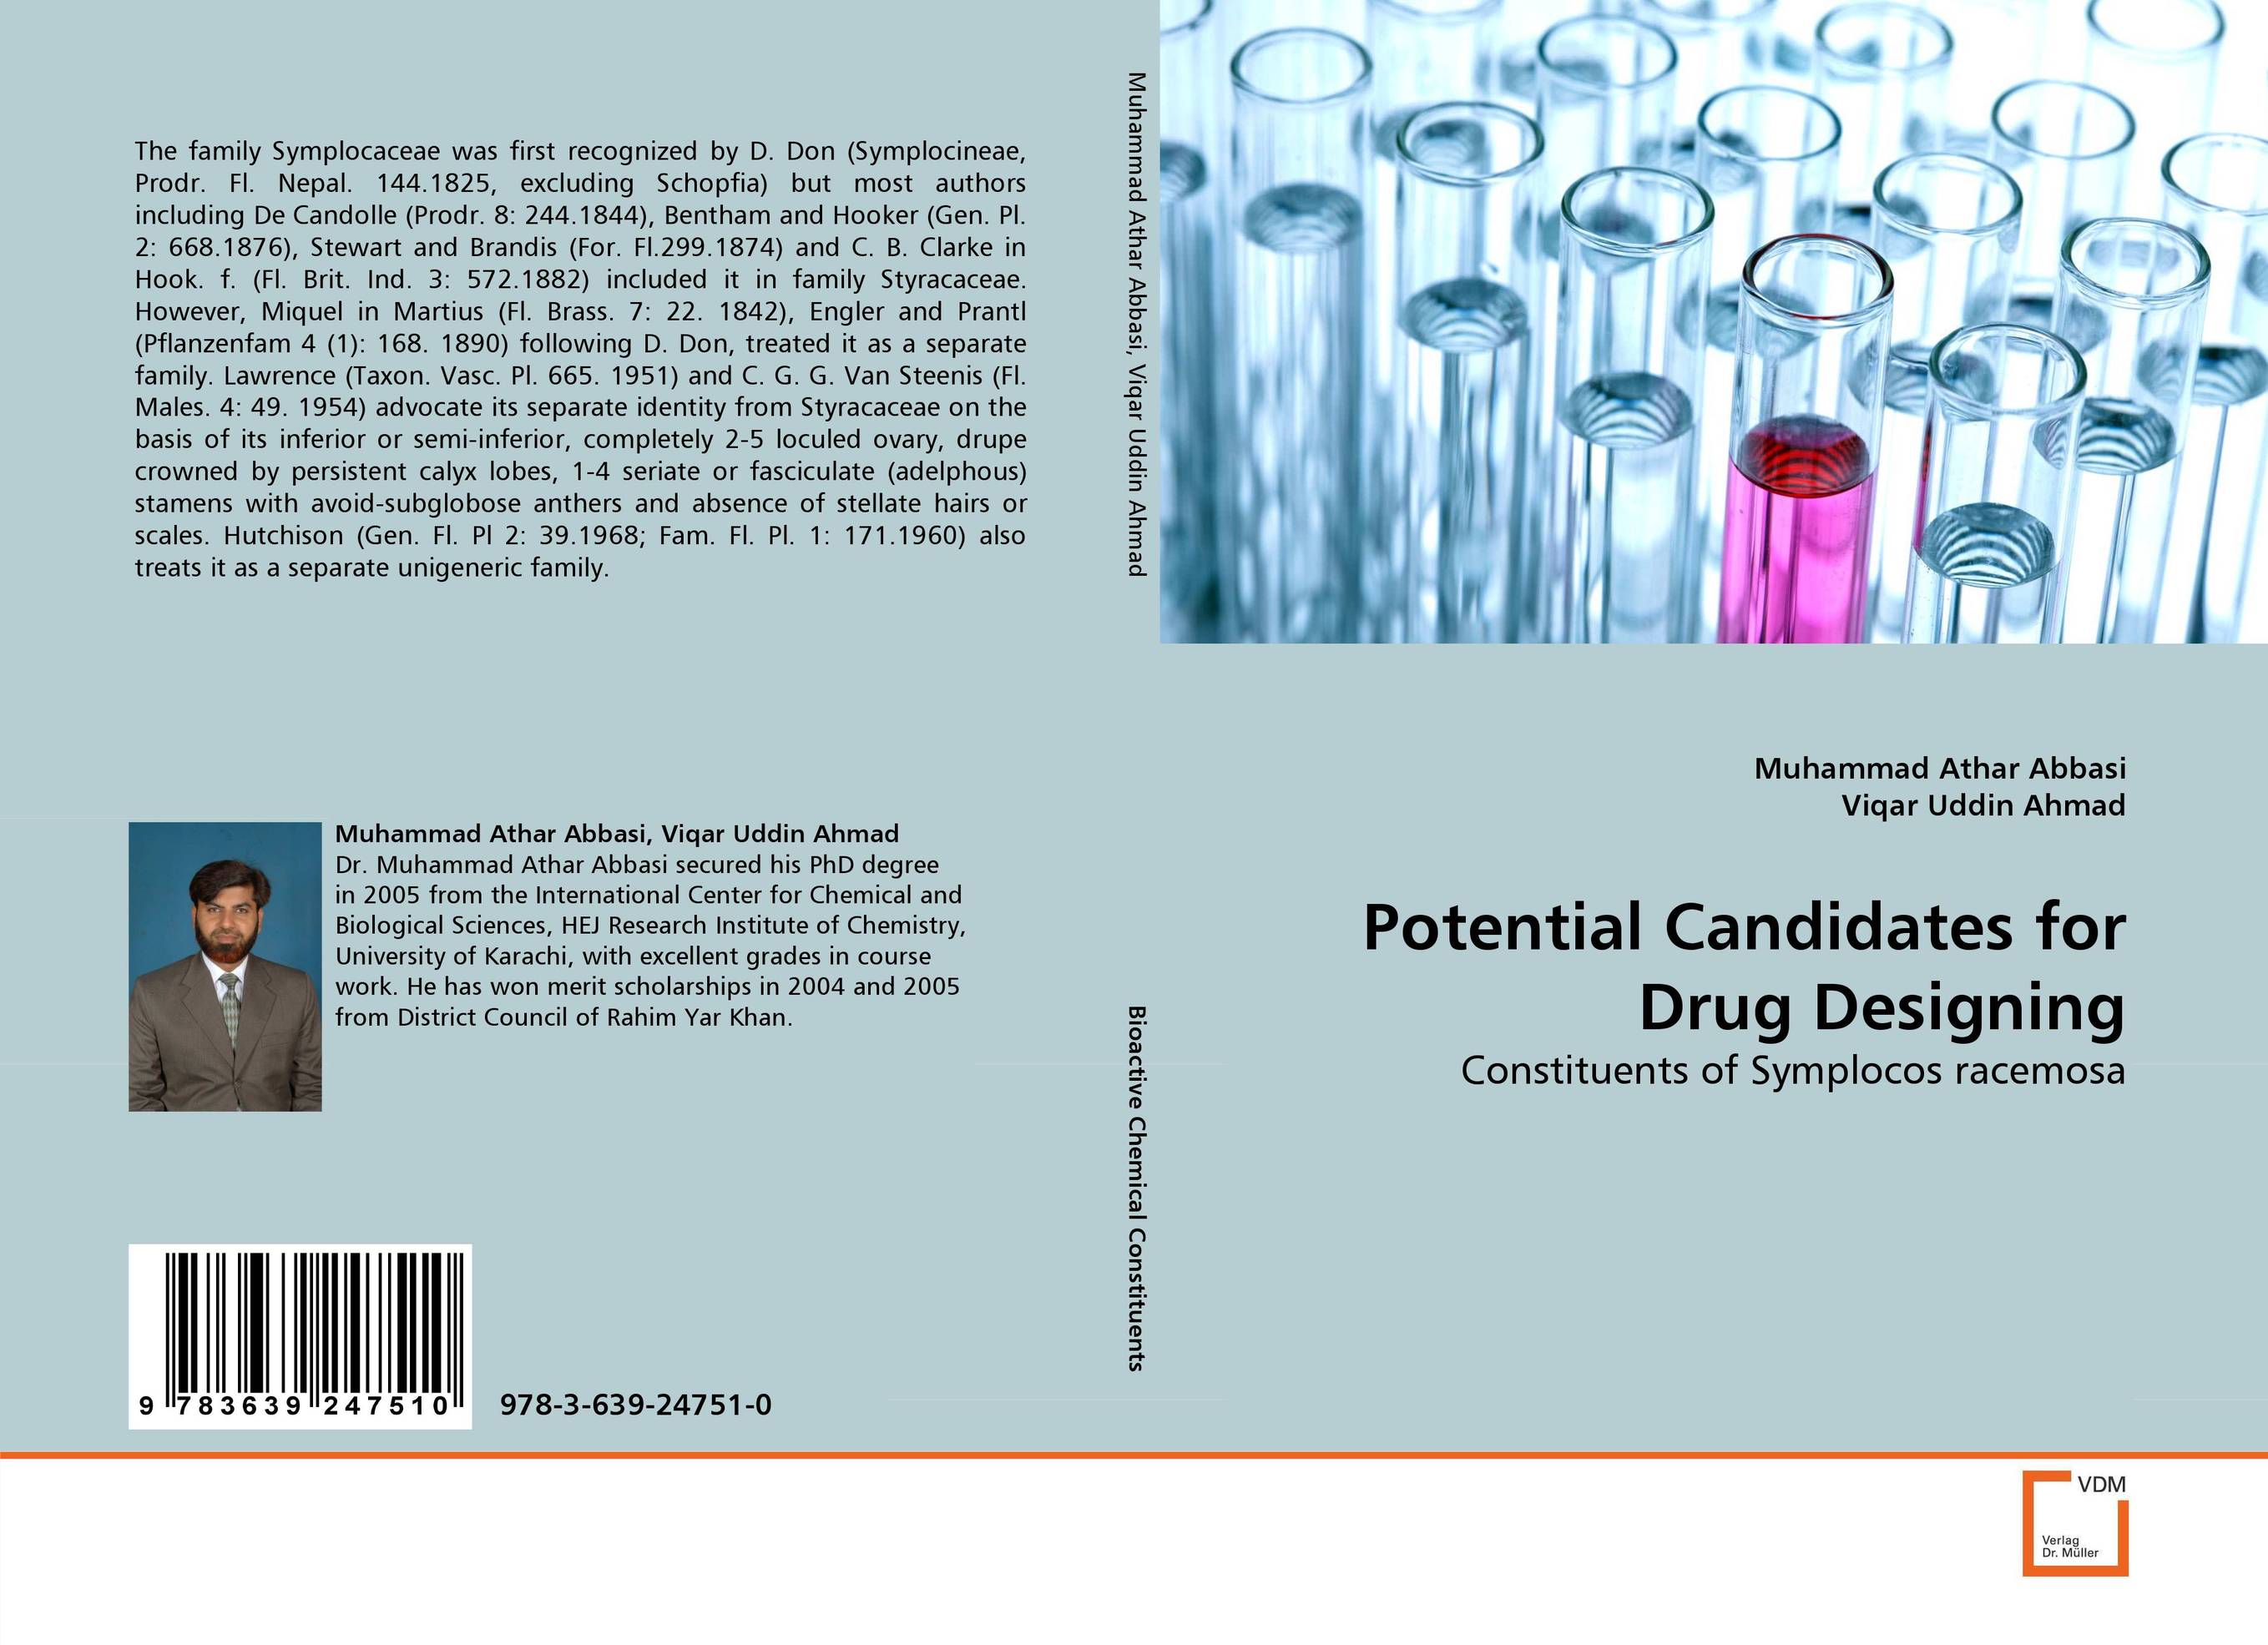 Potential Candidates for Drug Designing